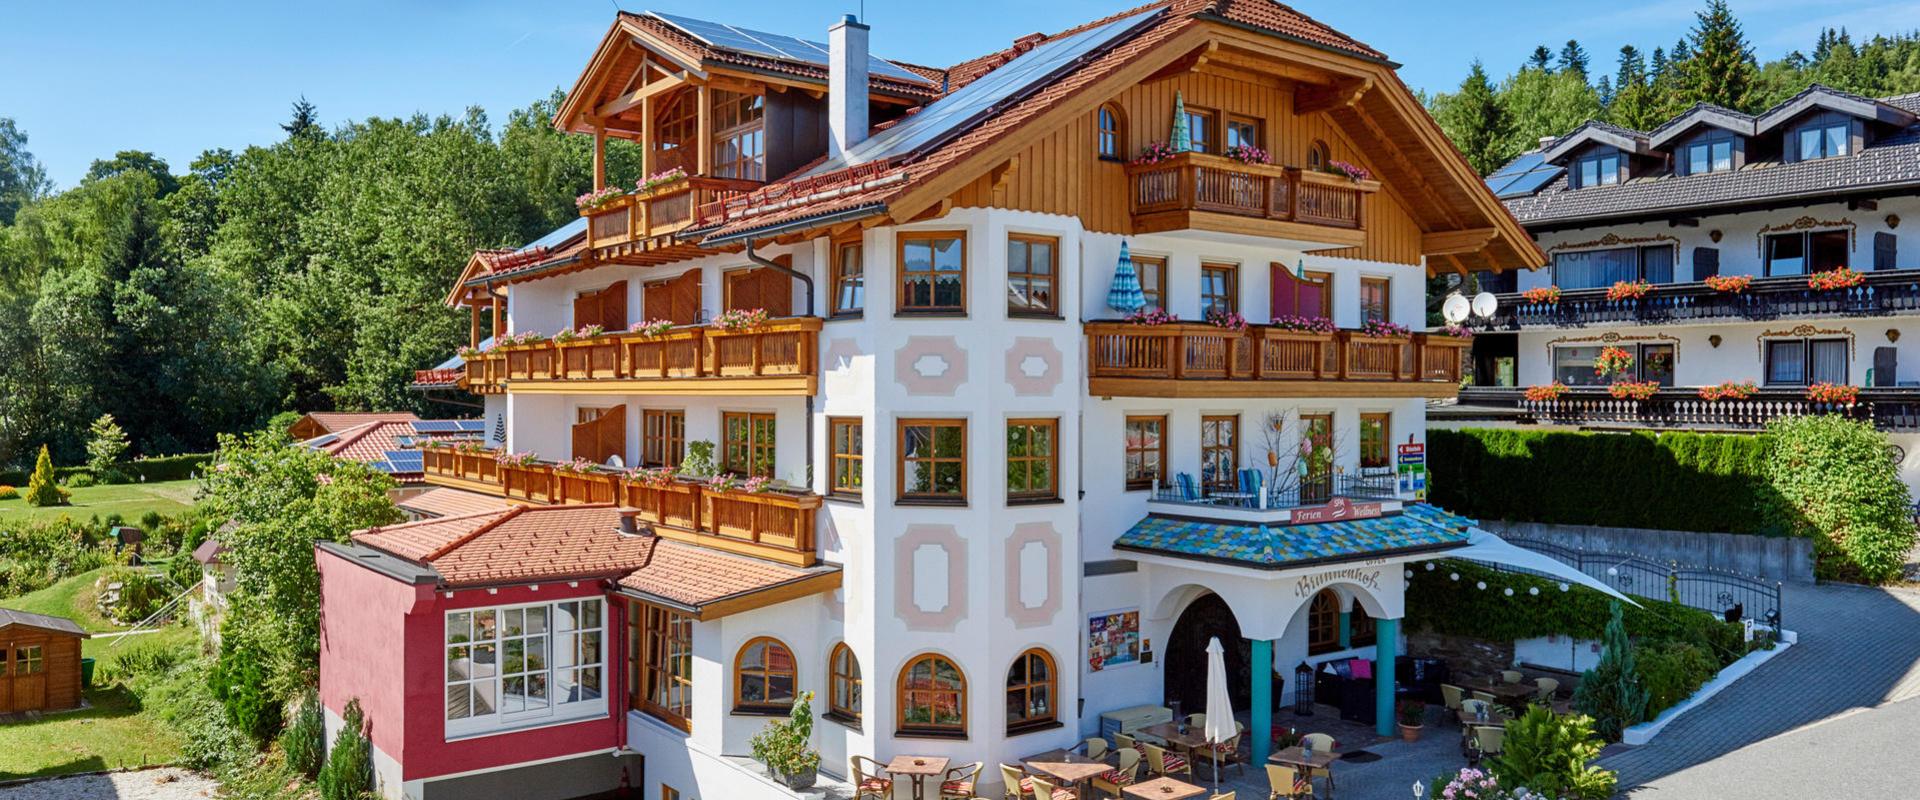 20933 Biker Hotel Brunnenhof im Bayerischen Wald.jpg